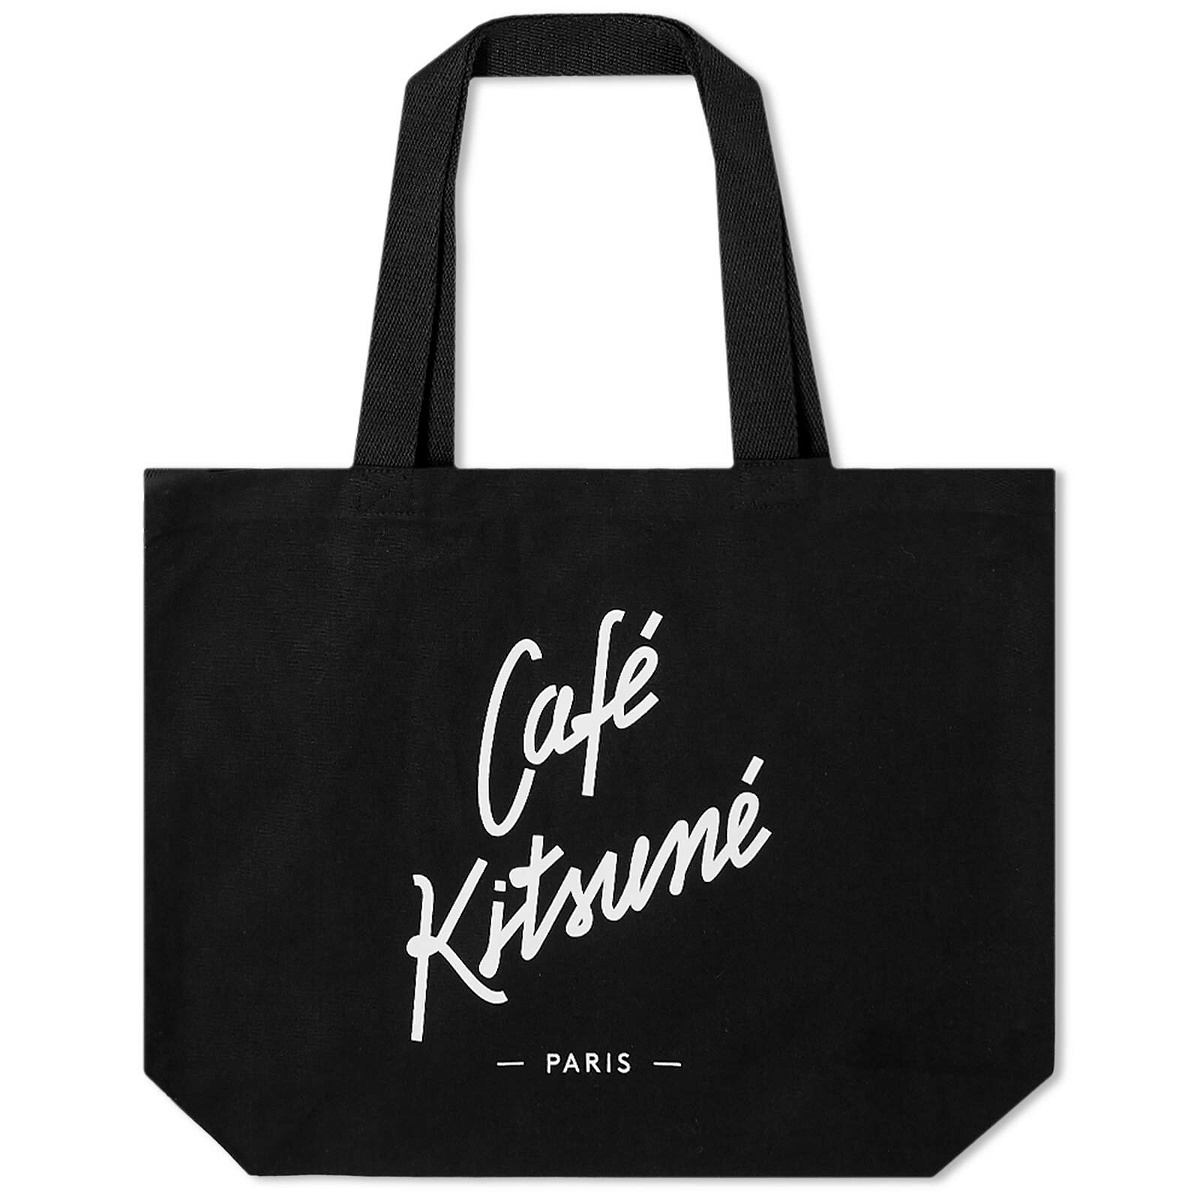 Photo: Maison Kitsuné Cafe Kitsuné Tote Bag in Black